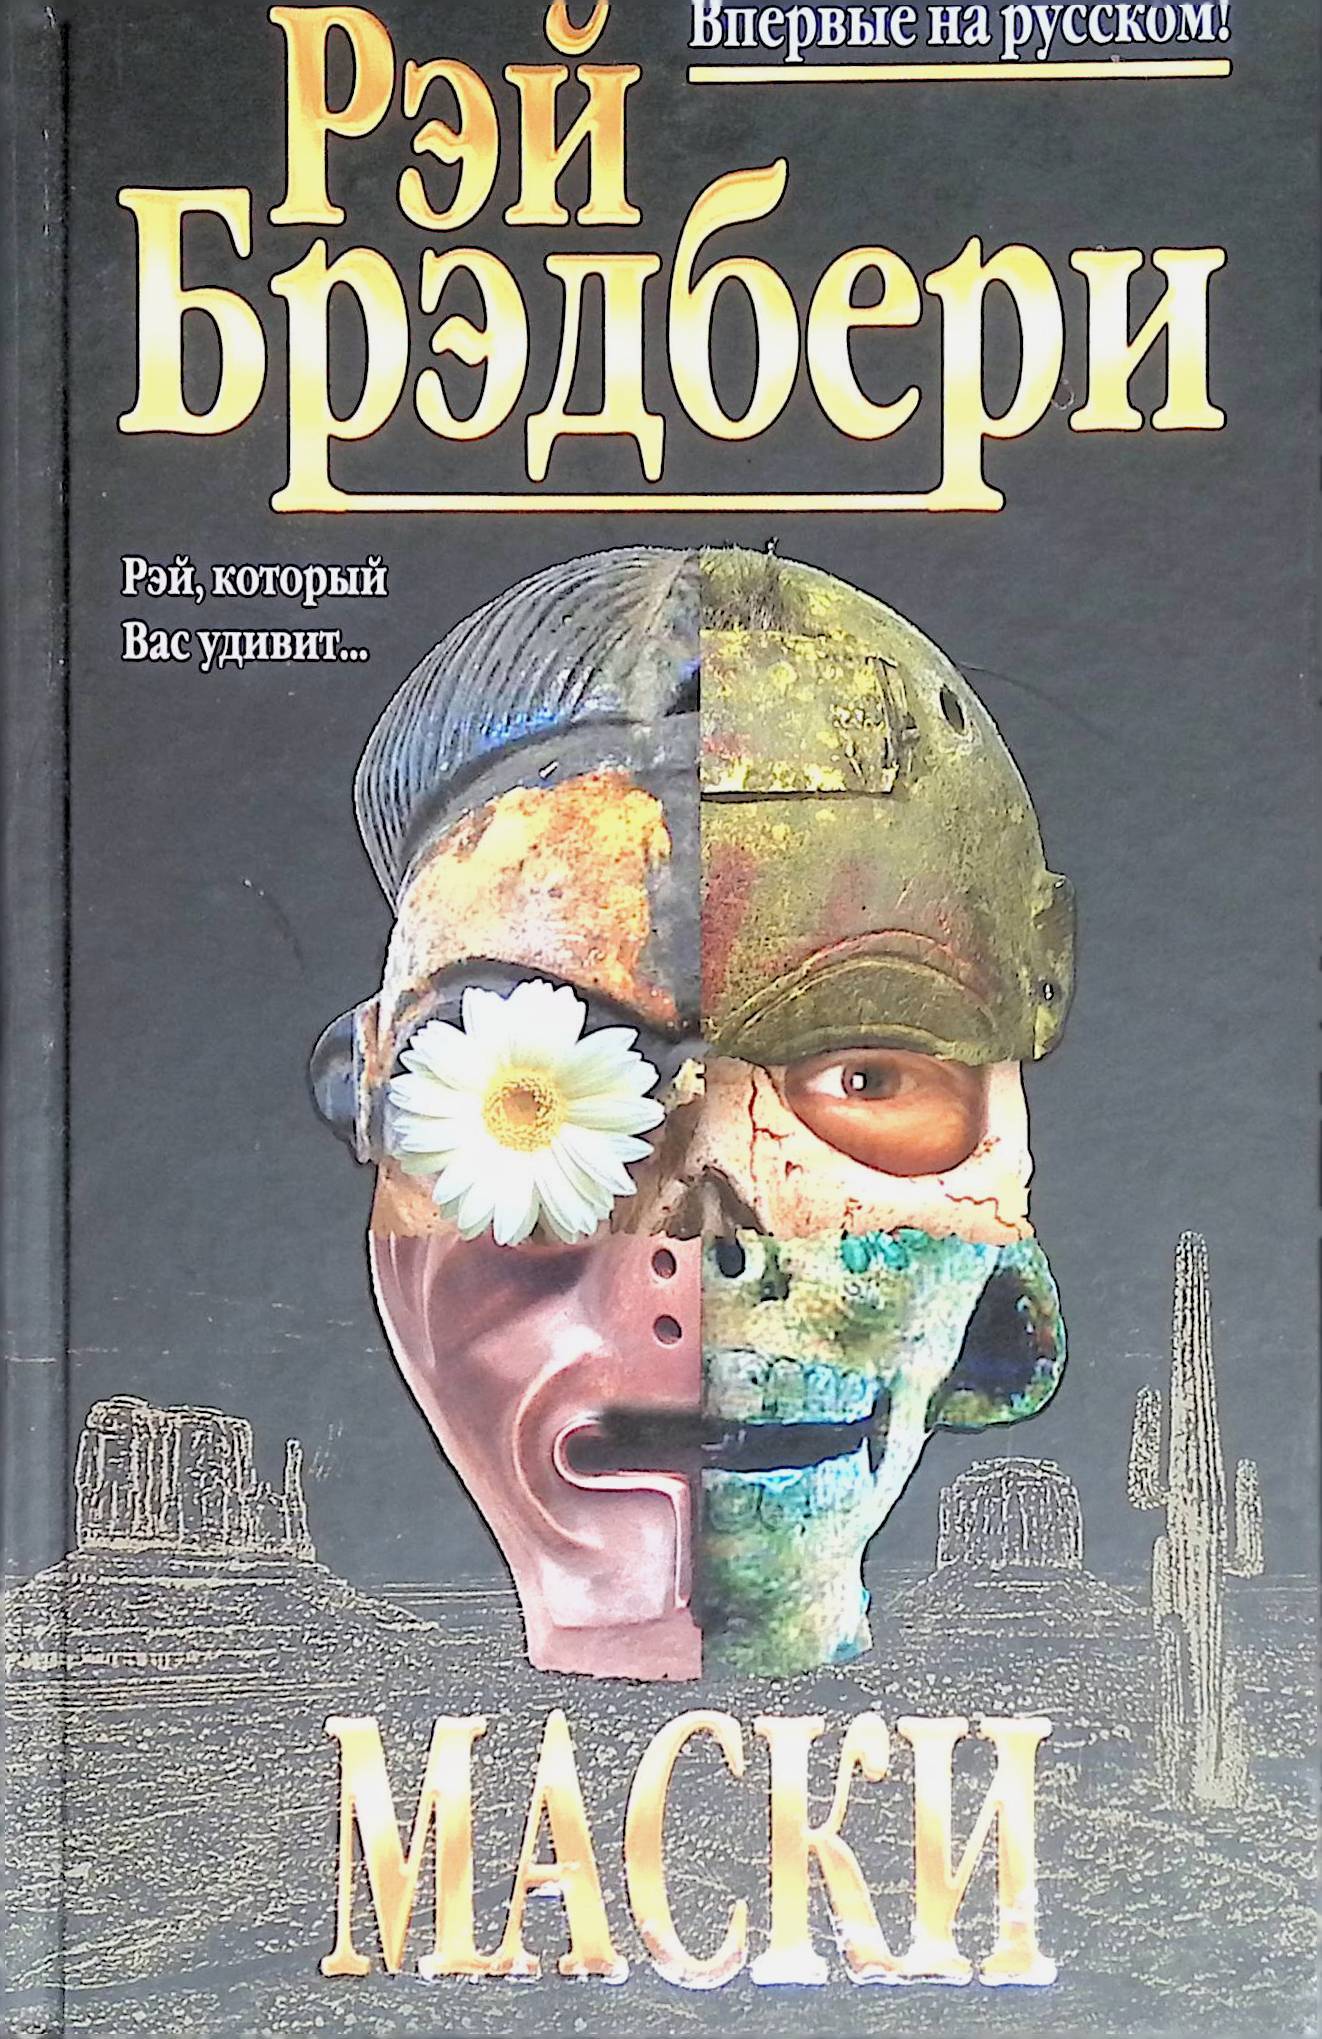 Книга про маски. Маска книга. Лица и маски книга детектив. Трилогия масок книга.